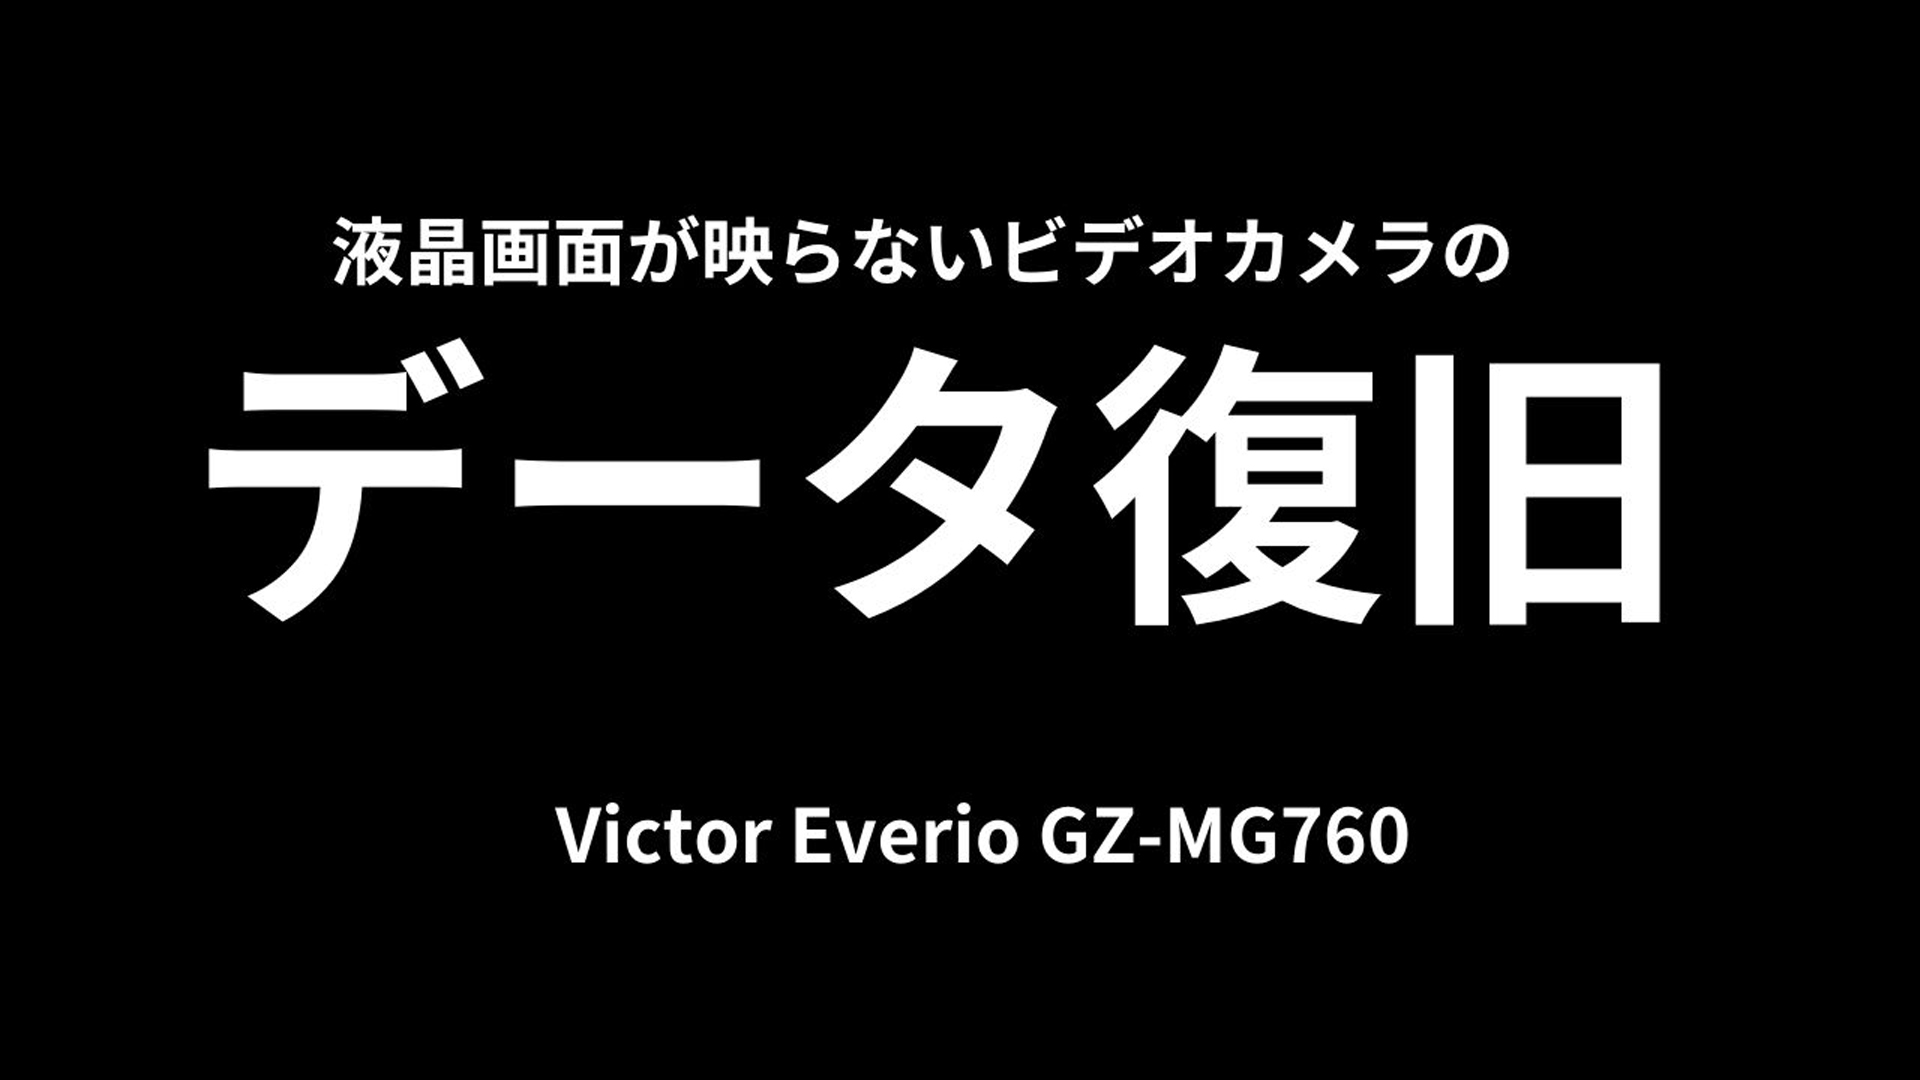 故障したVictor Everio GZ-MG760を救った！長崎県のお客様からの挑戦